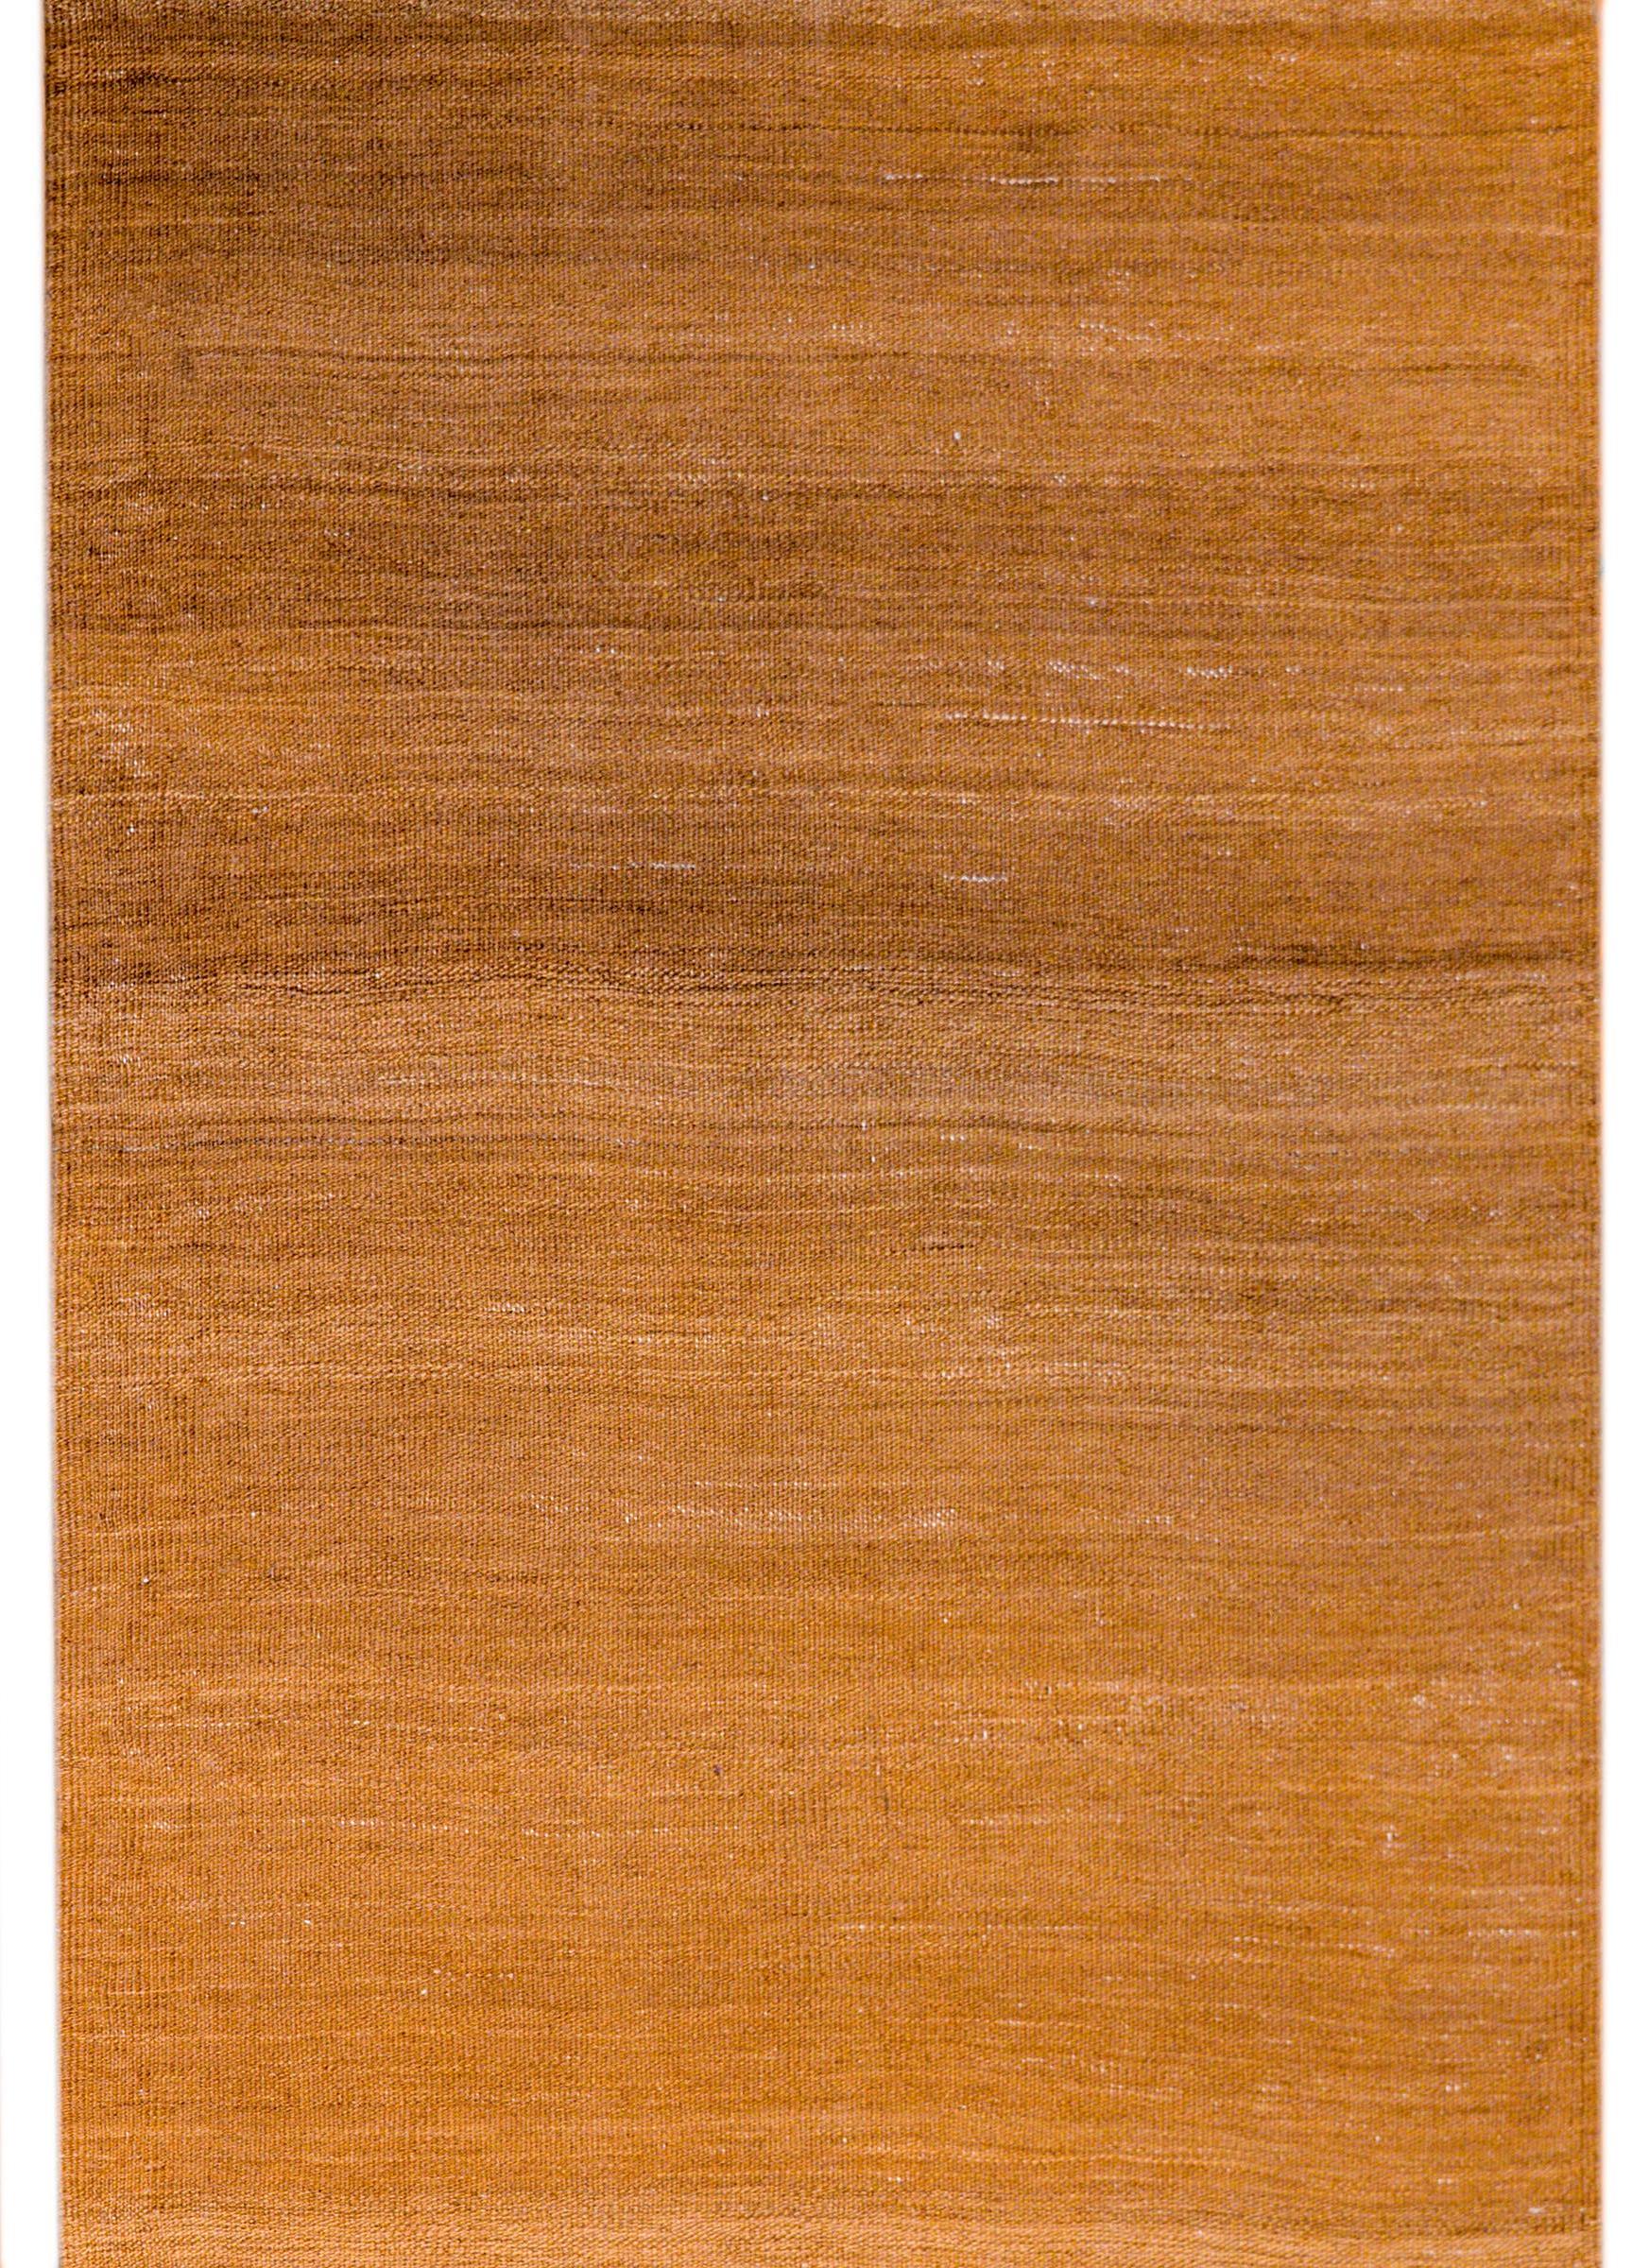 Un élégant tapis Kilim Persan du milieu du 20ème siècle, tissé en laine brune naturelle non teintée, donnant au tapis un motif de couleur variée.